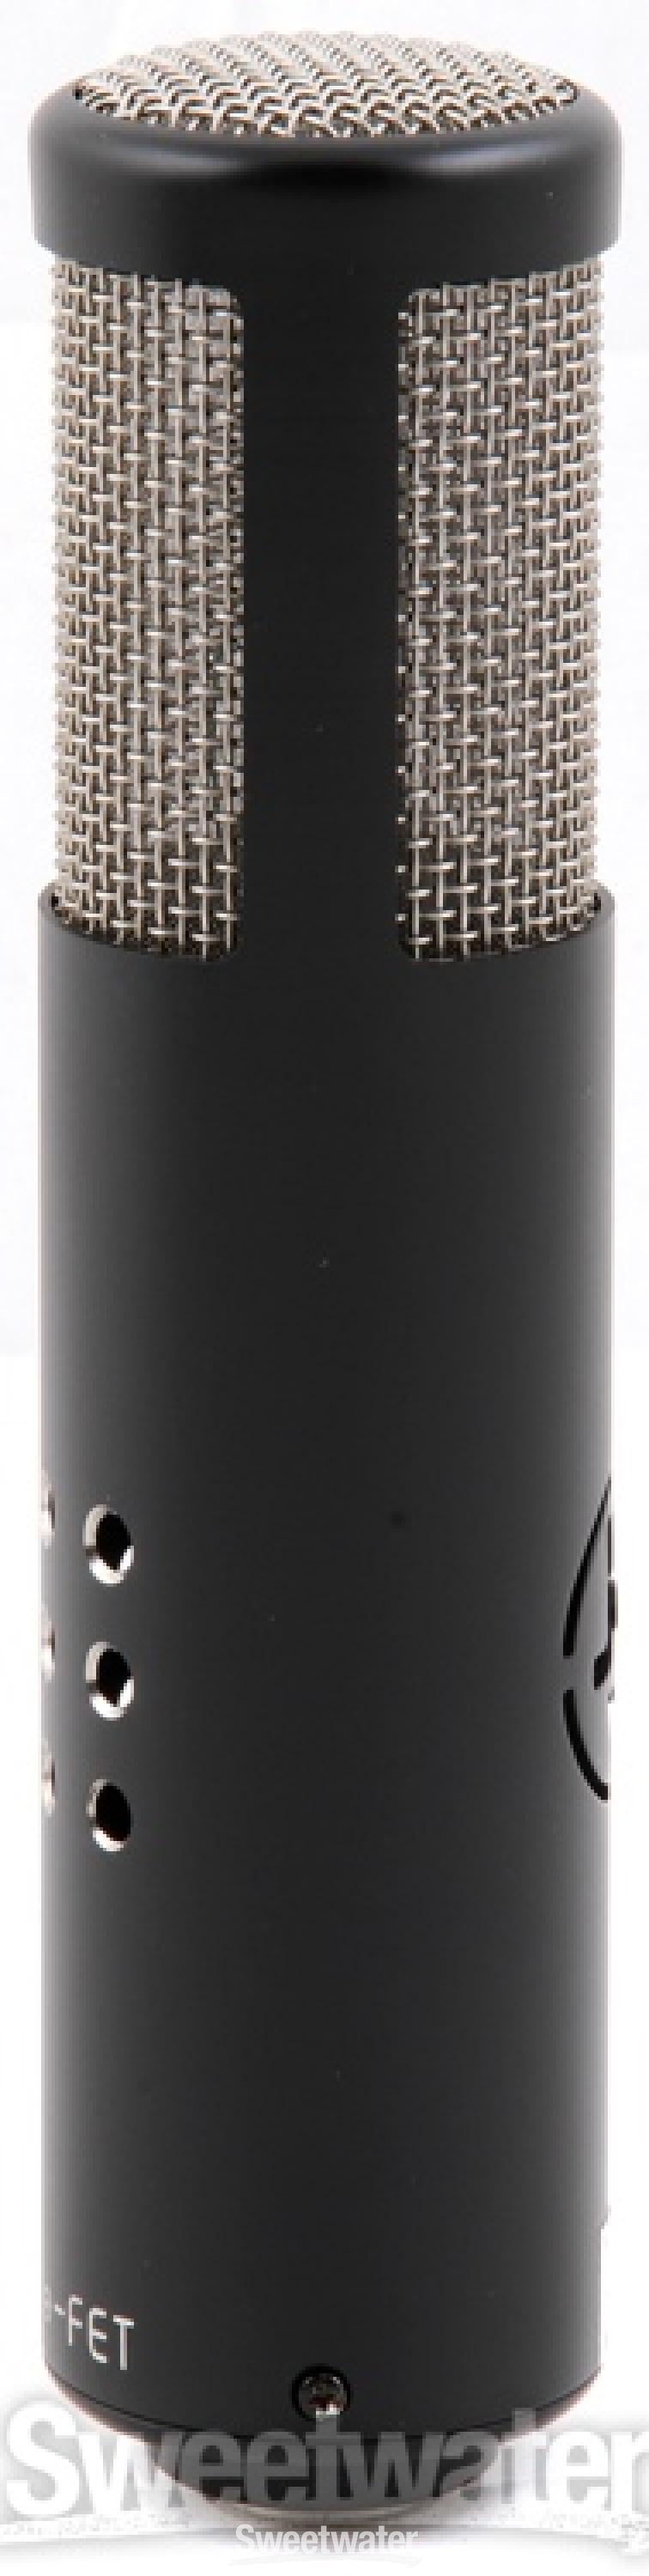 売れ筋アイテムラン GROOVE TUBES MODEL 1B-FET コンデンサーマイク